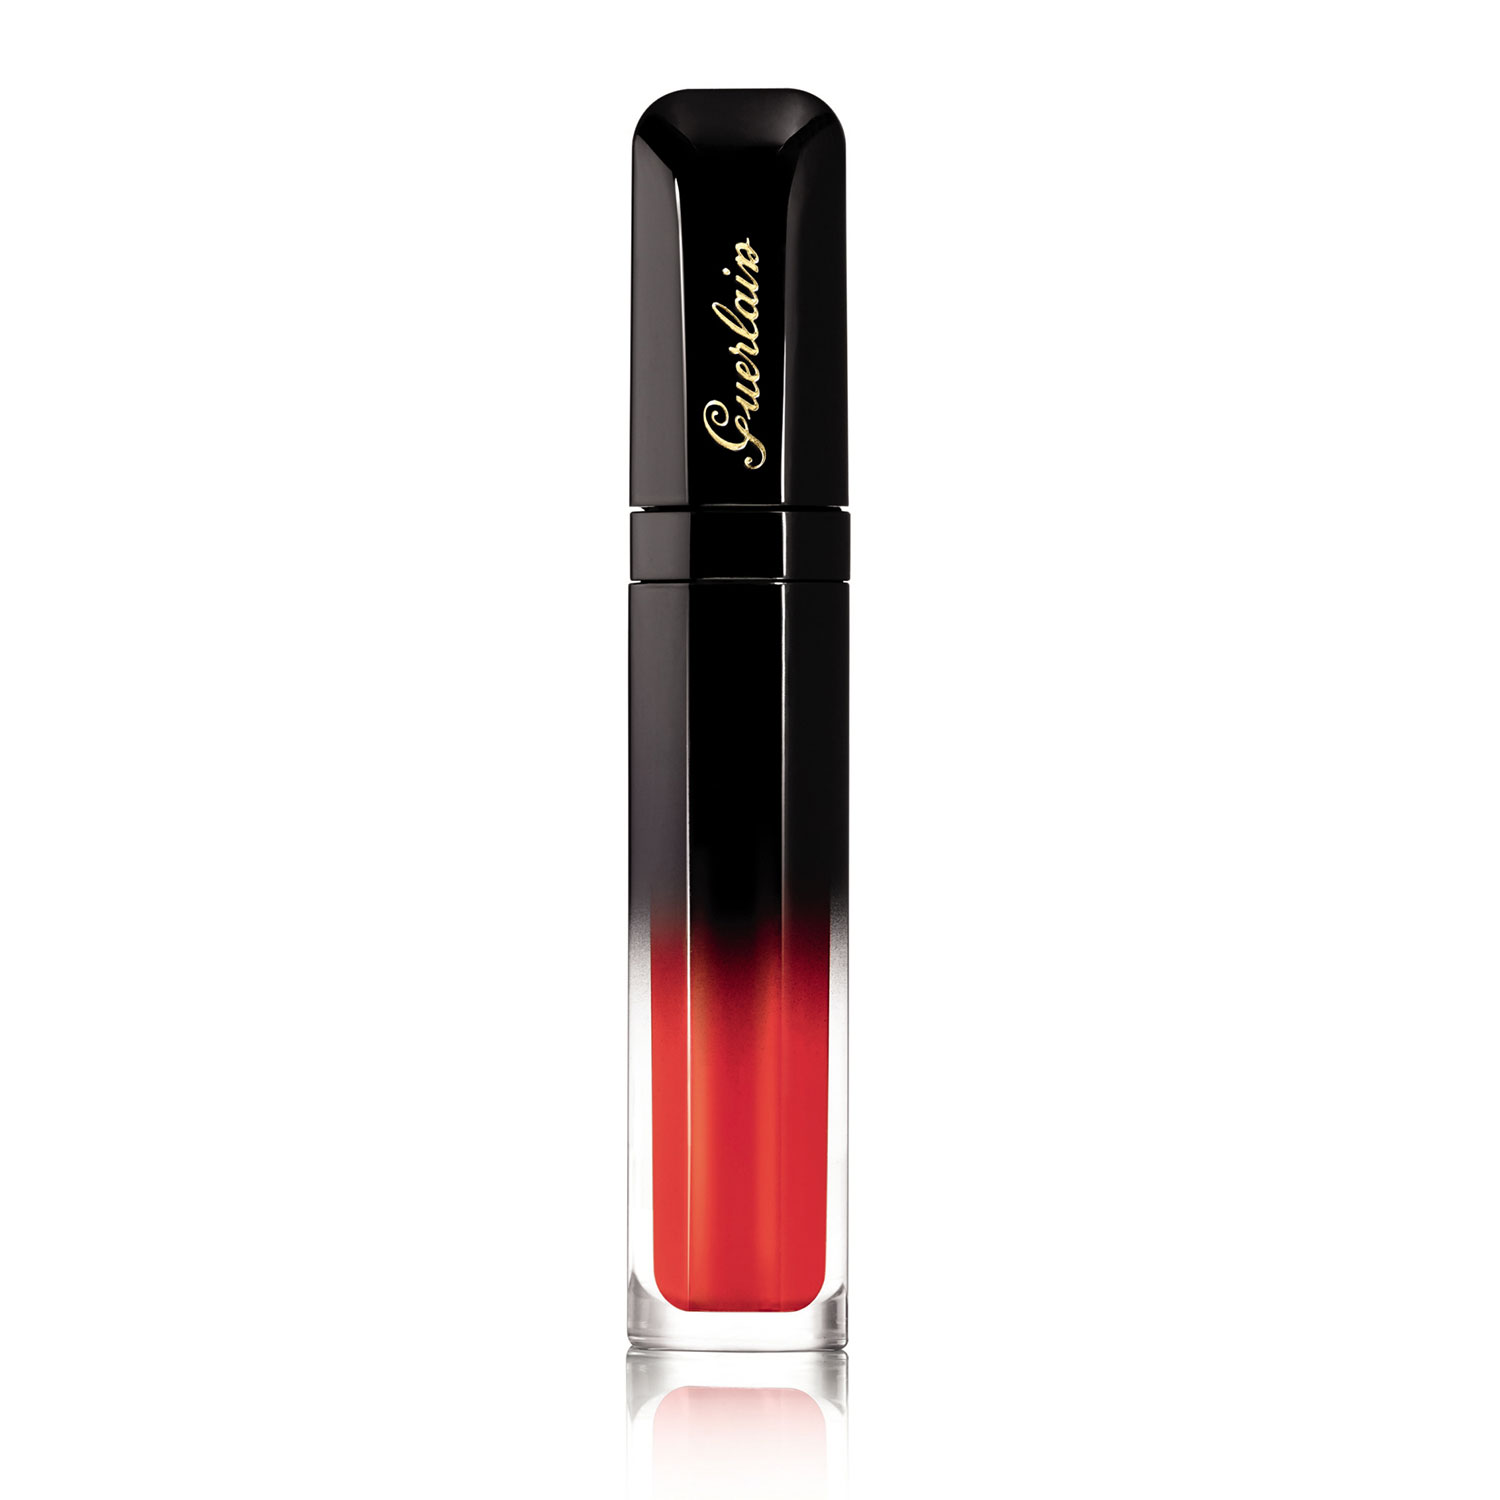 Guerlain Intense Liquid Matte Lipstick, 7ml-M41 Appealing Orange